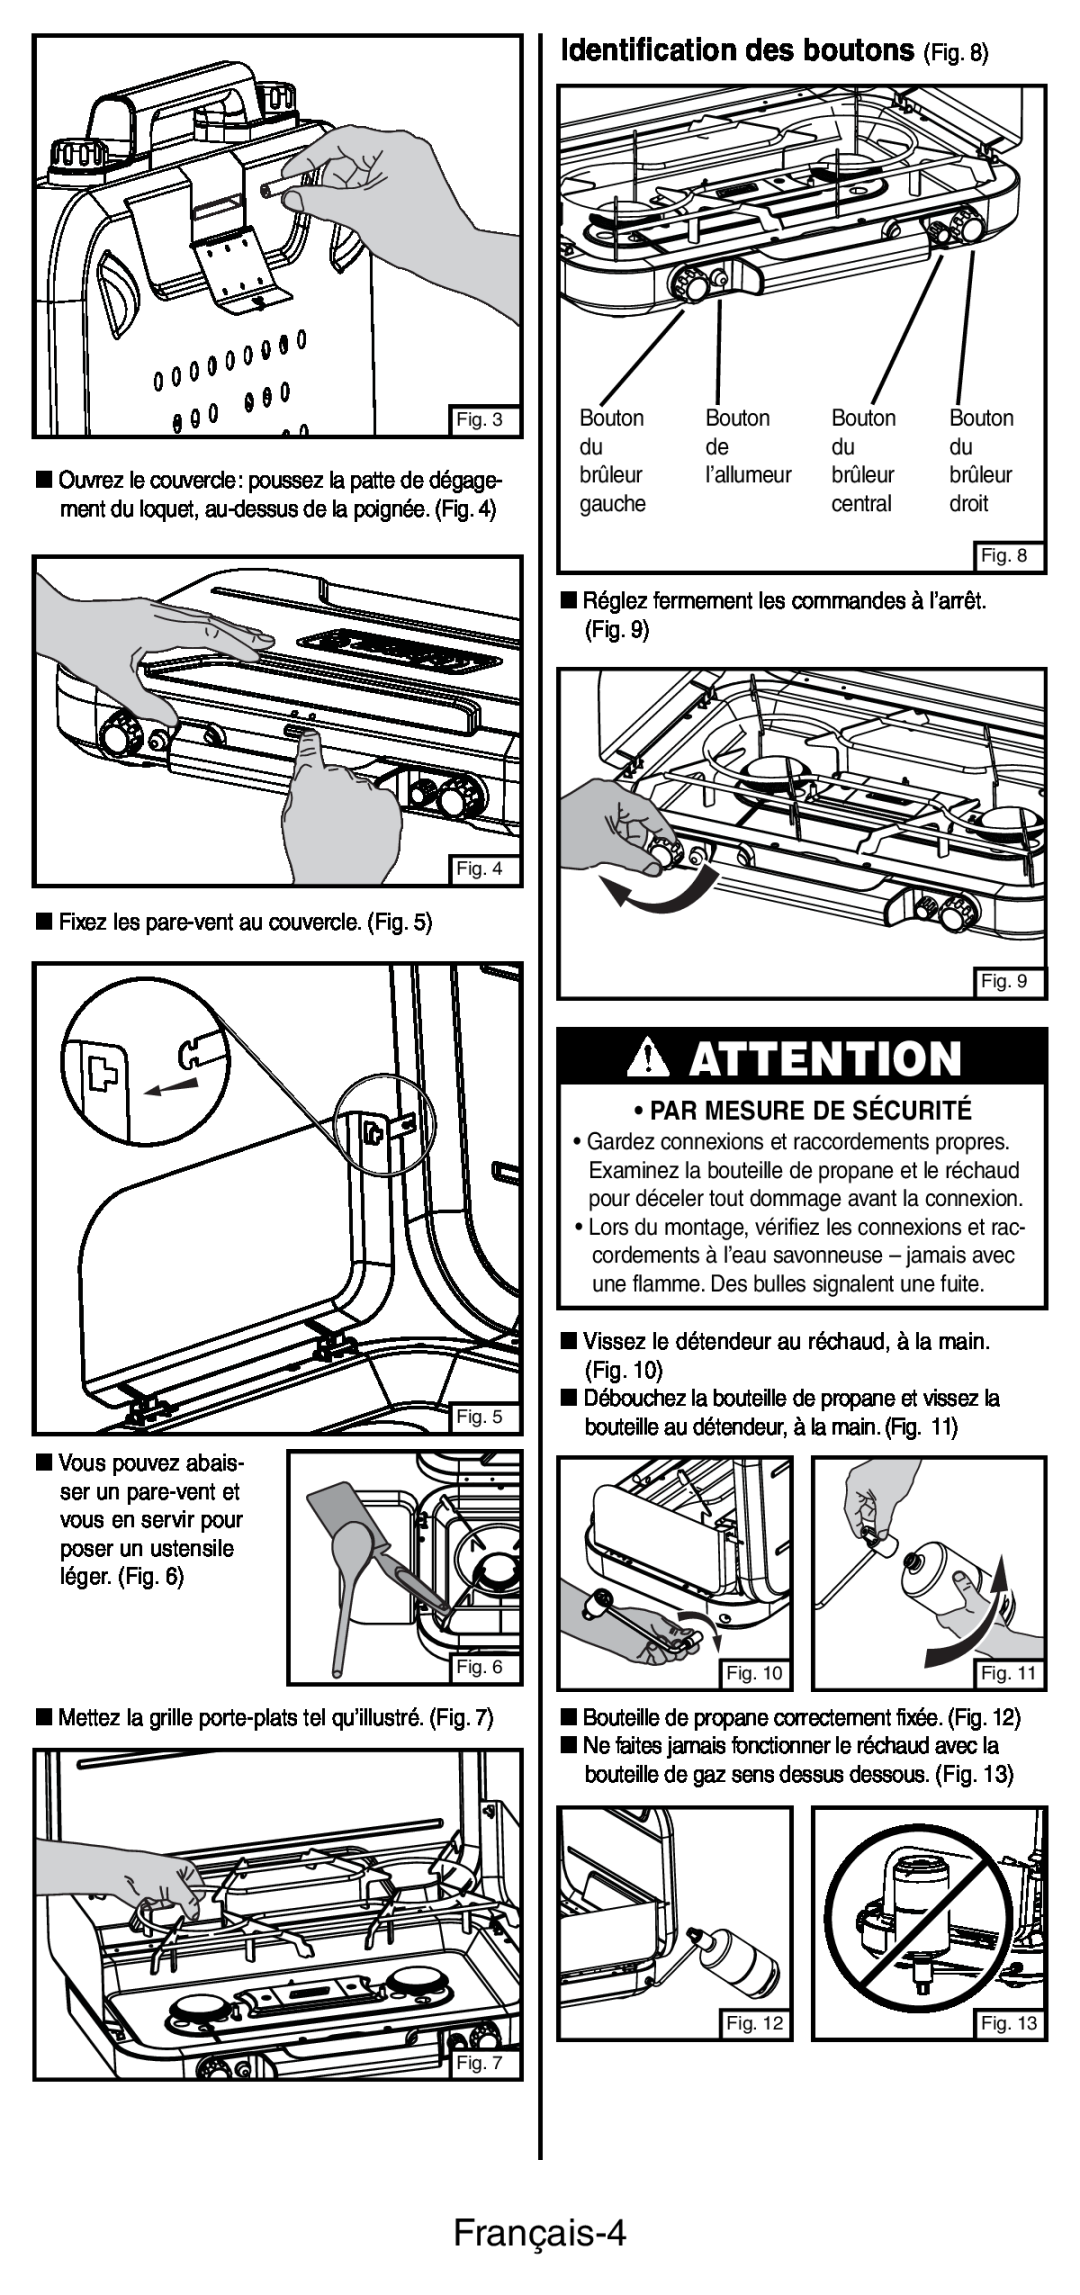 Coleman 5444 Series manual Français-4, Identification des boutons Fig, Par Mesure De Sécurité 